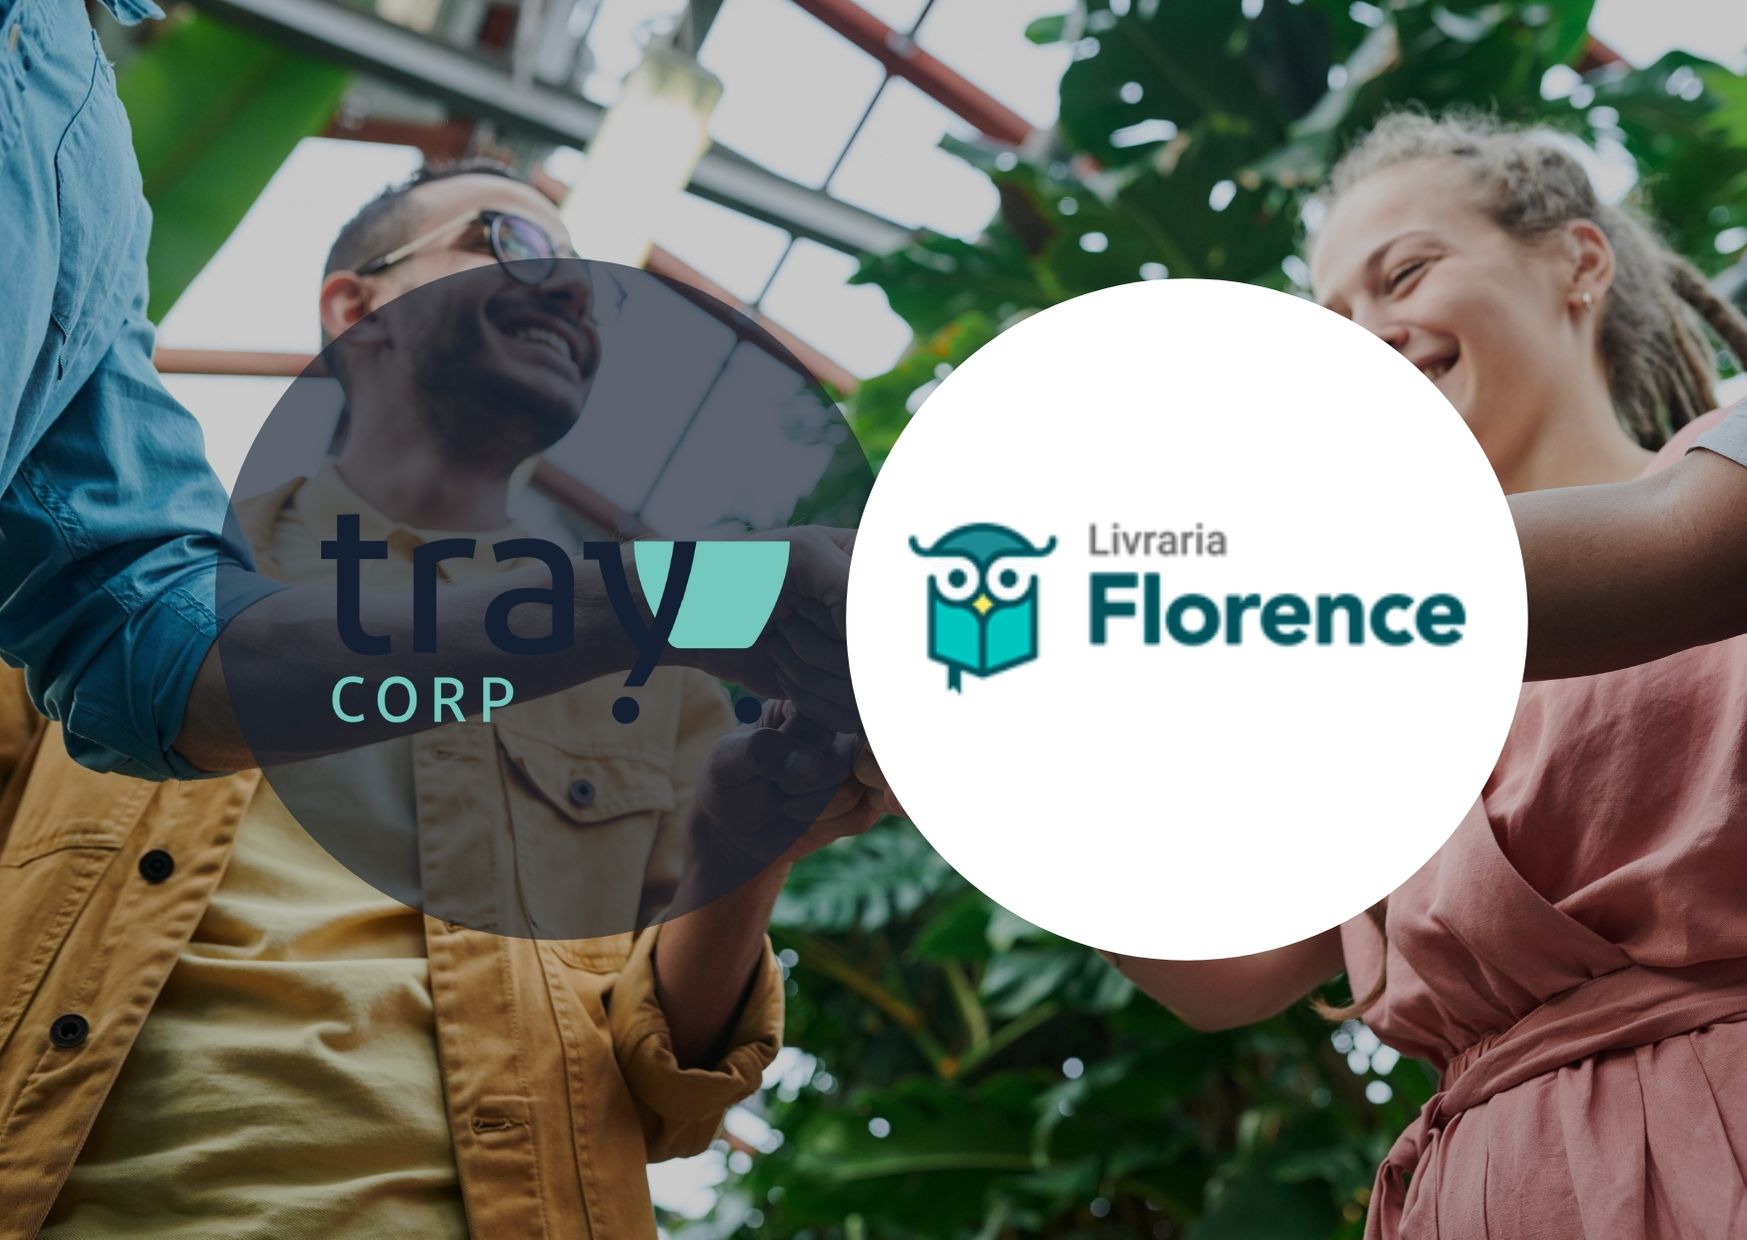 Como a livraria Florence aumentou 85% da sua receita online com a Tray Corp